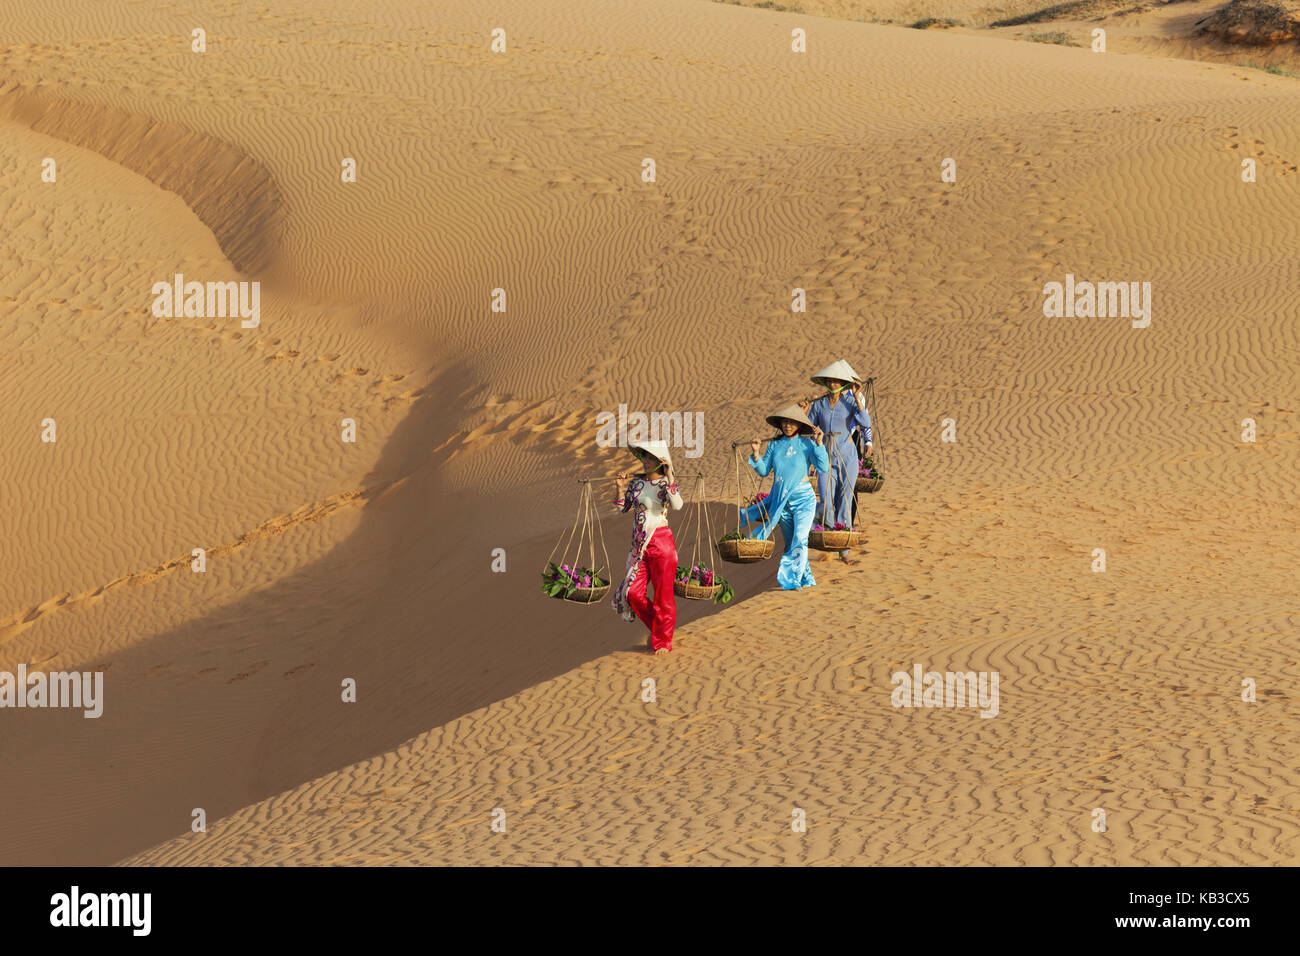 Vietnam, Mui Ne, Sand dune, women carry costs, Stock Photo